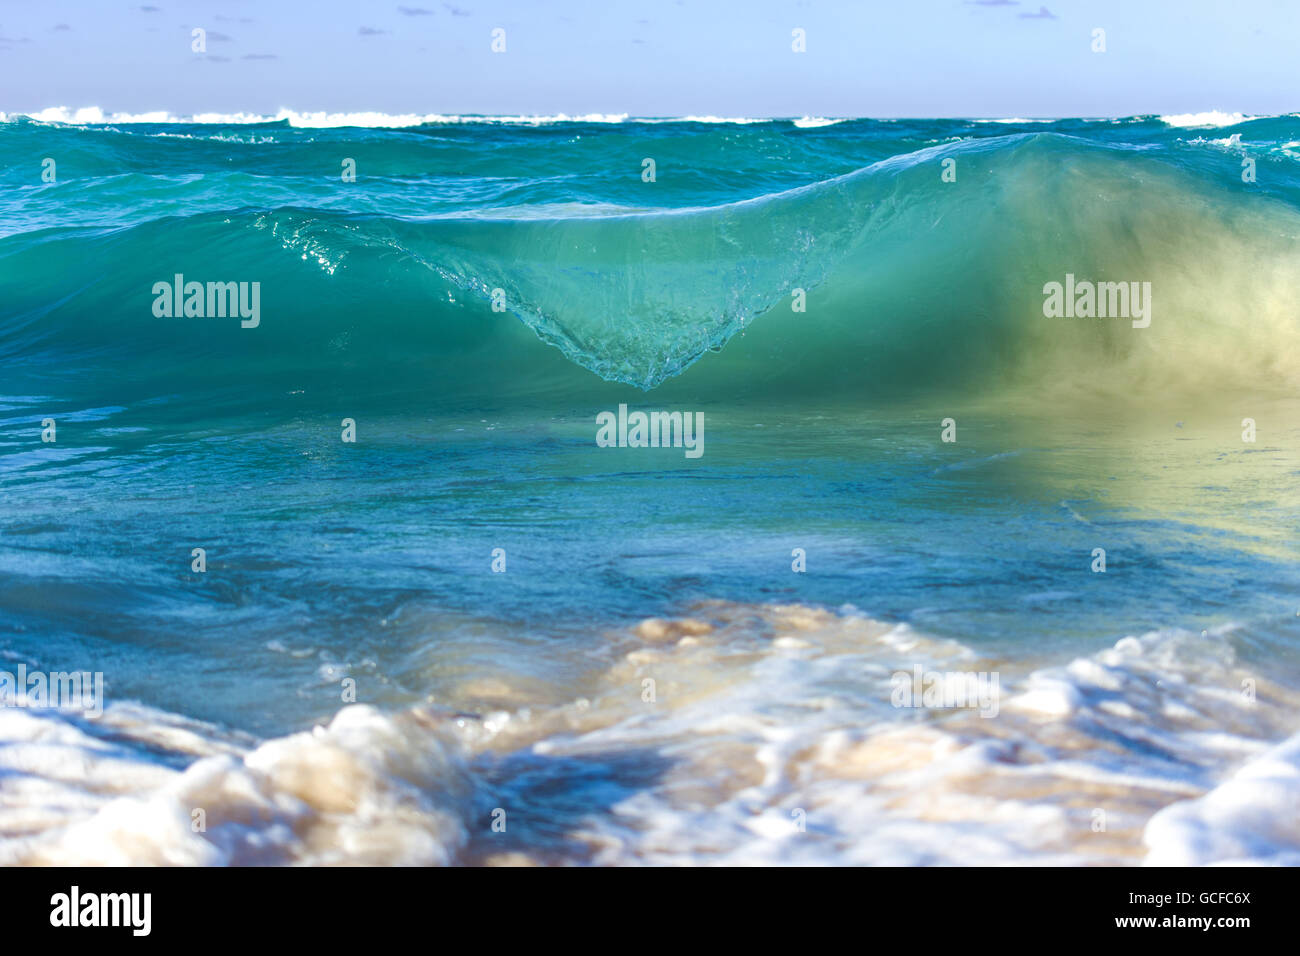 Foto der Welle schoss in Punta Cana, DR mit einem Makro-Objektiv und eine kurze Verschlusszeit. Stockfoto